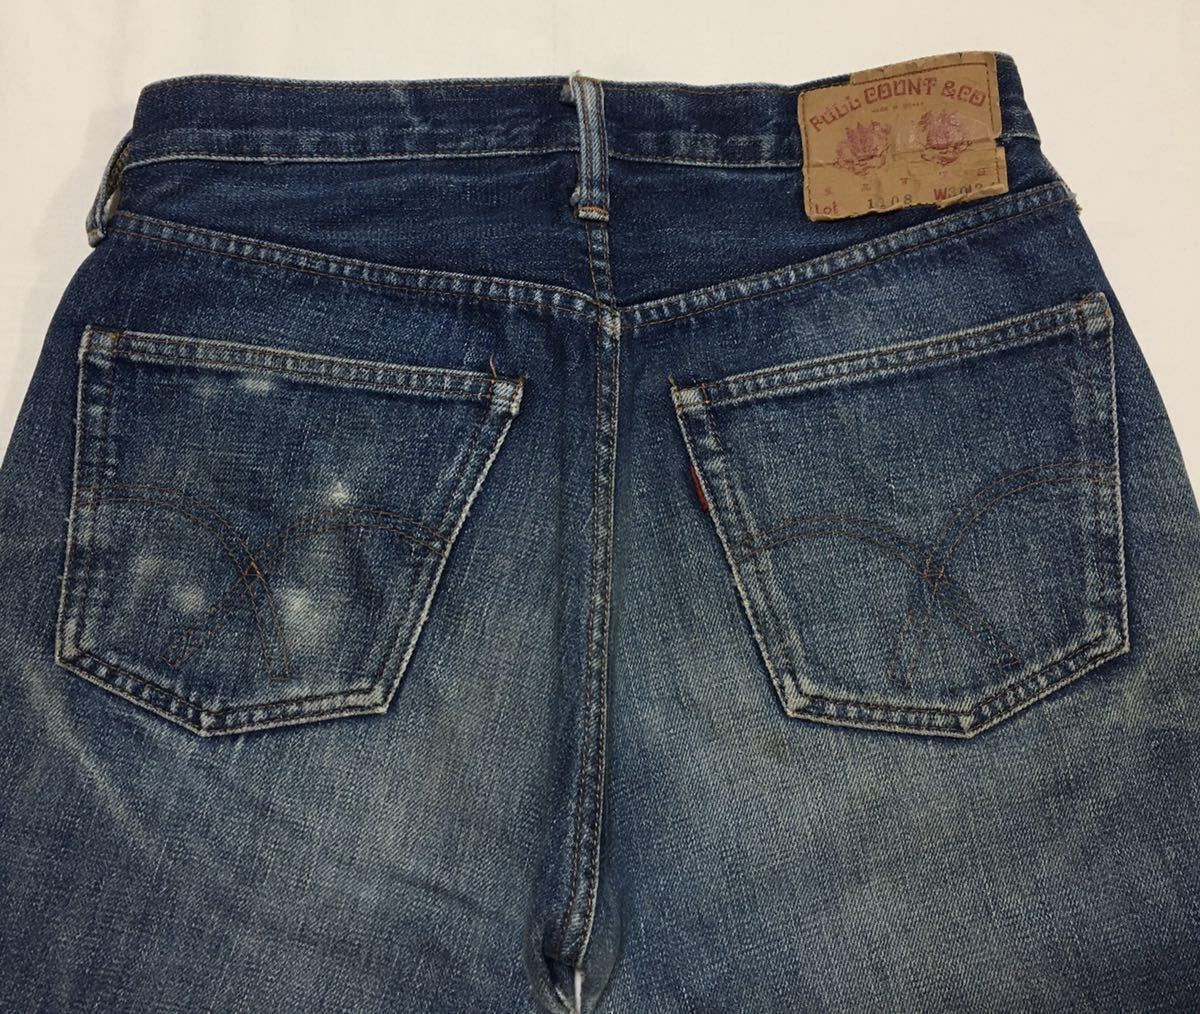 [ старый FULL COUNT] Fullcount 1108 Vintage копия джинсы 501 BIGE W30 индиго цвет .. Denim брюки красный уголок сделано в Японии снят с производства 